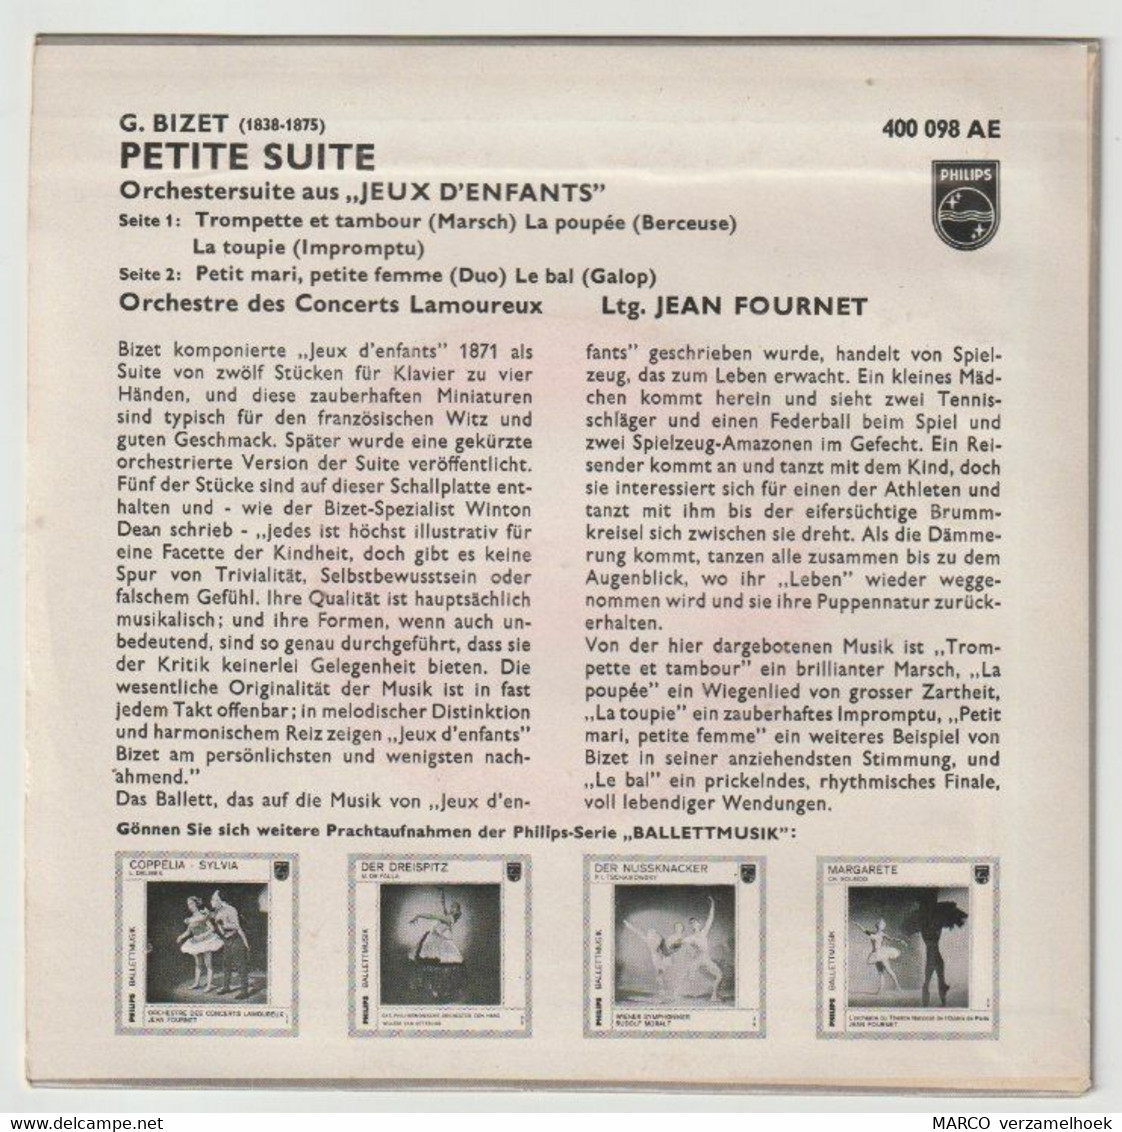 45T Single Jeux D'enfants G. Bizet - Petite Suite PHILIPS 400 098 - Opéra & Opérette